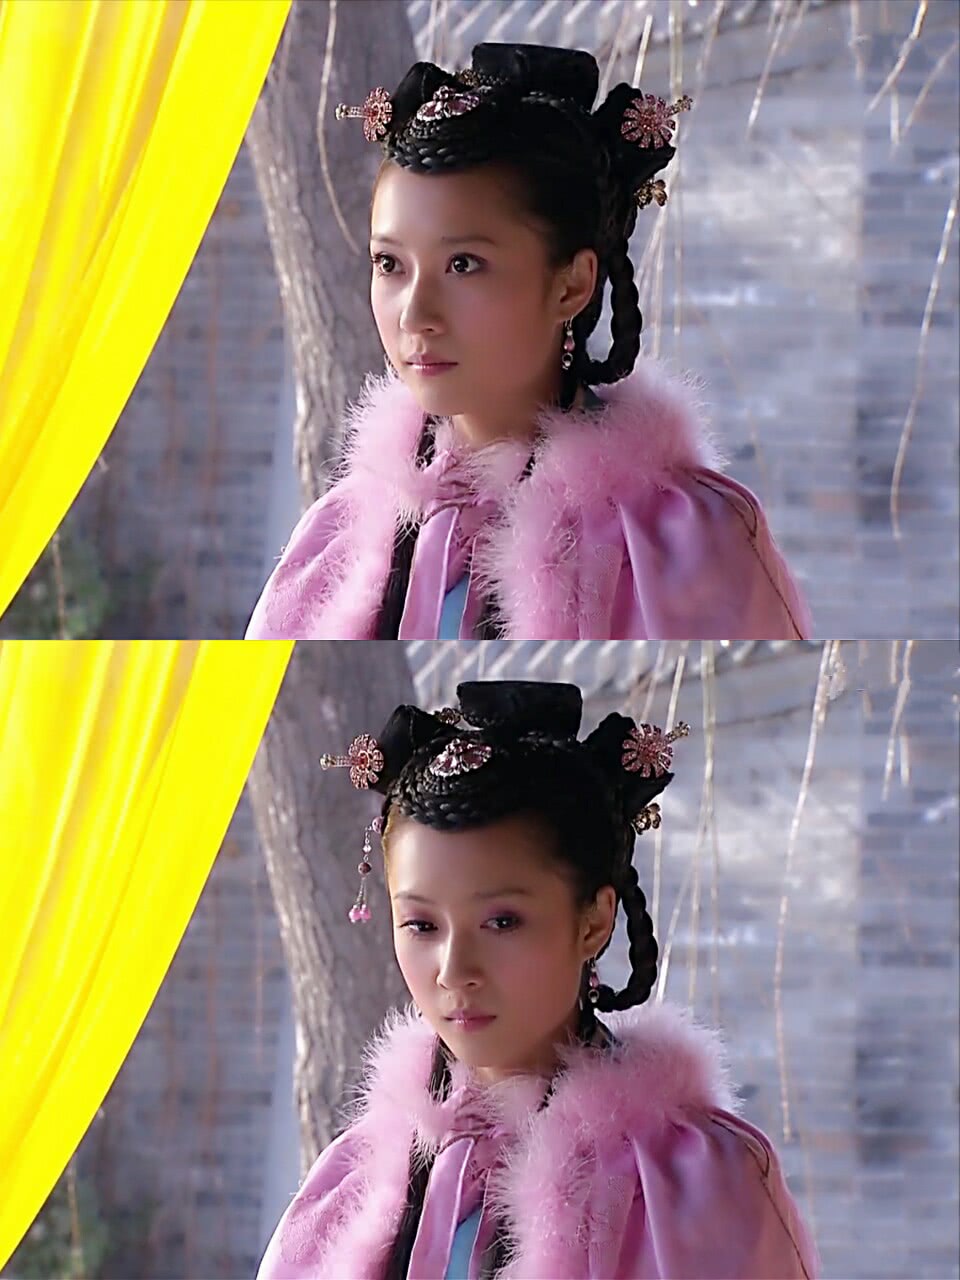 第五个女星就是《步步惊心》中玉檀的扮演者叶青,这个角色让人很心疼